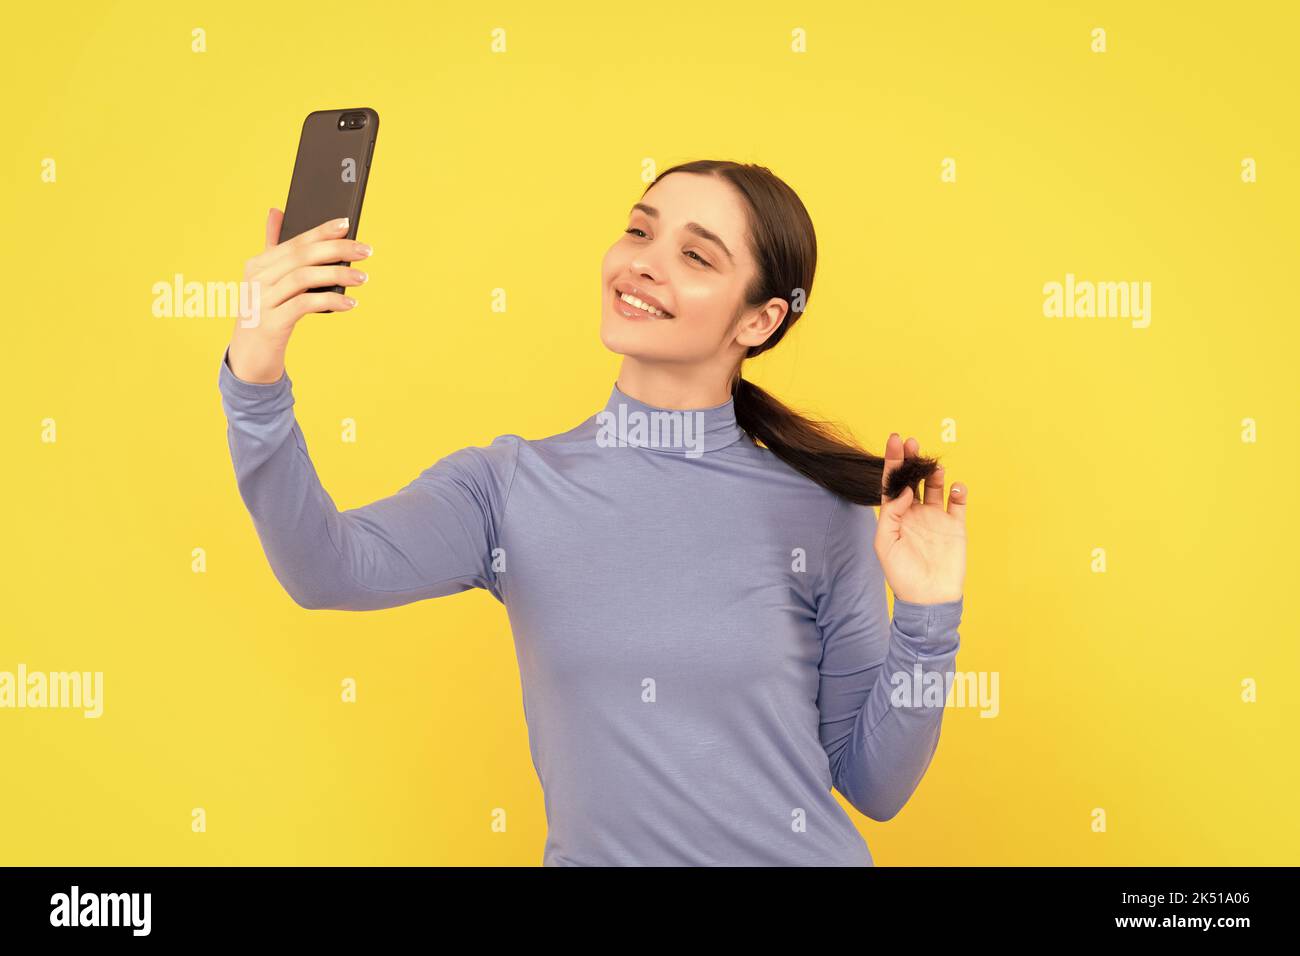 Lächelnde Frau macht Selfie Foto auf dem Smartphone, Selfie Stockfoto